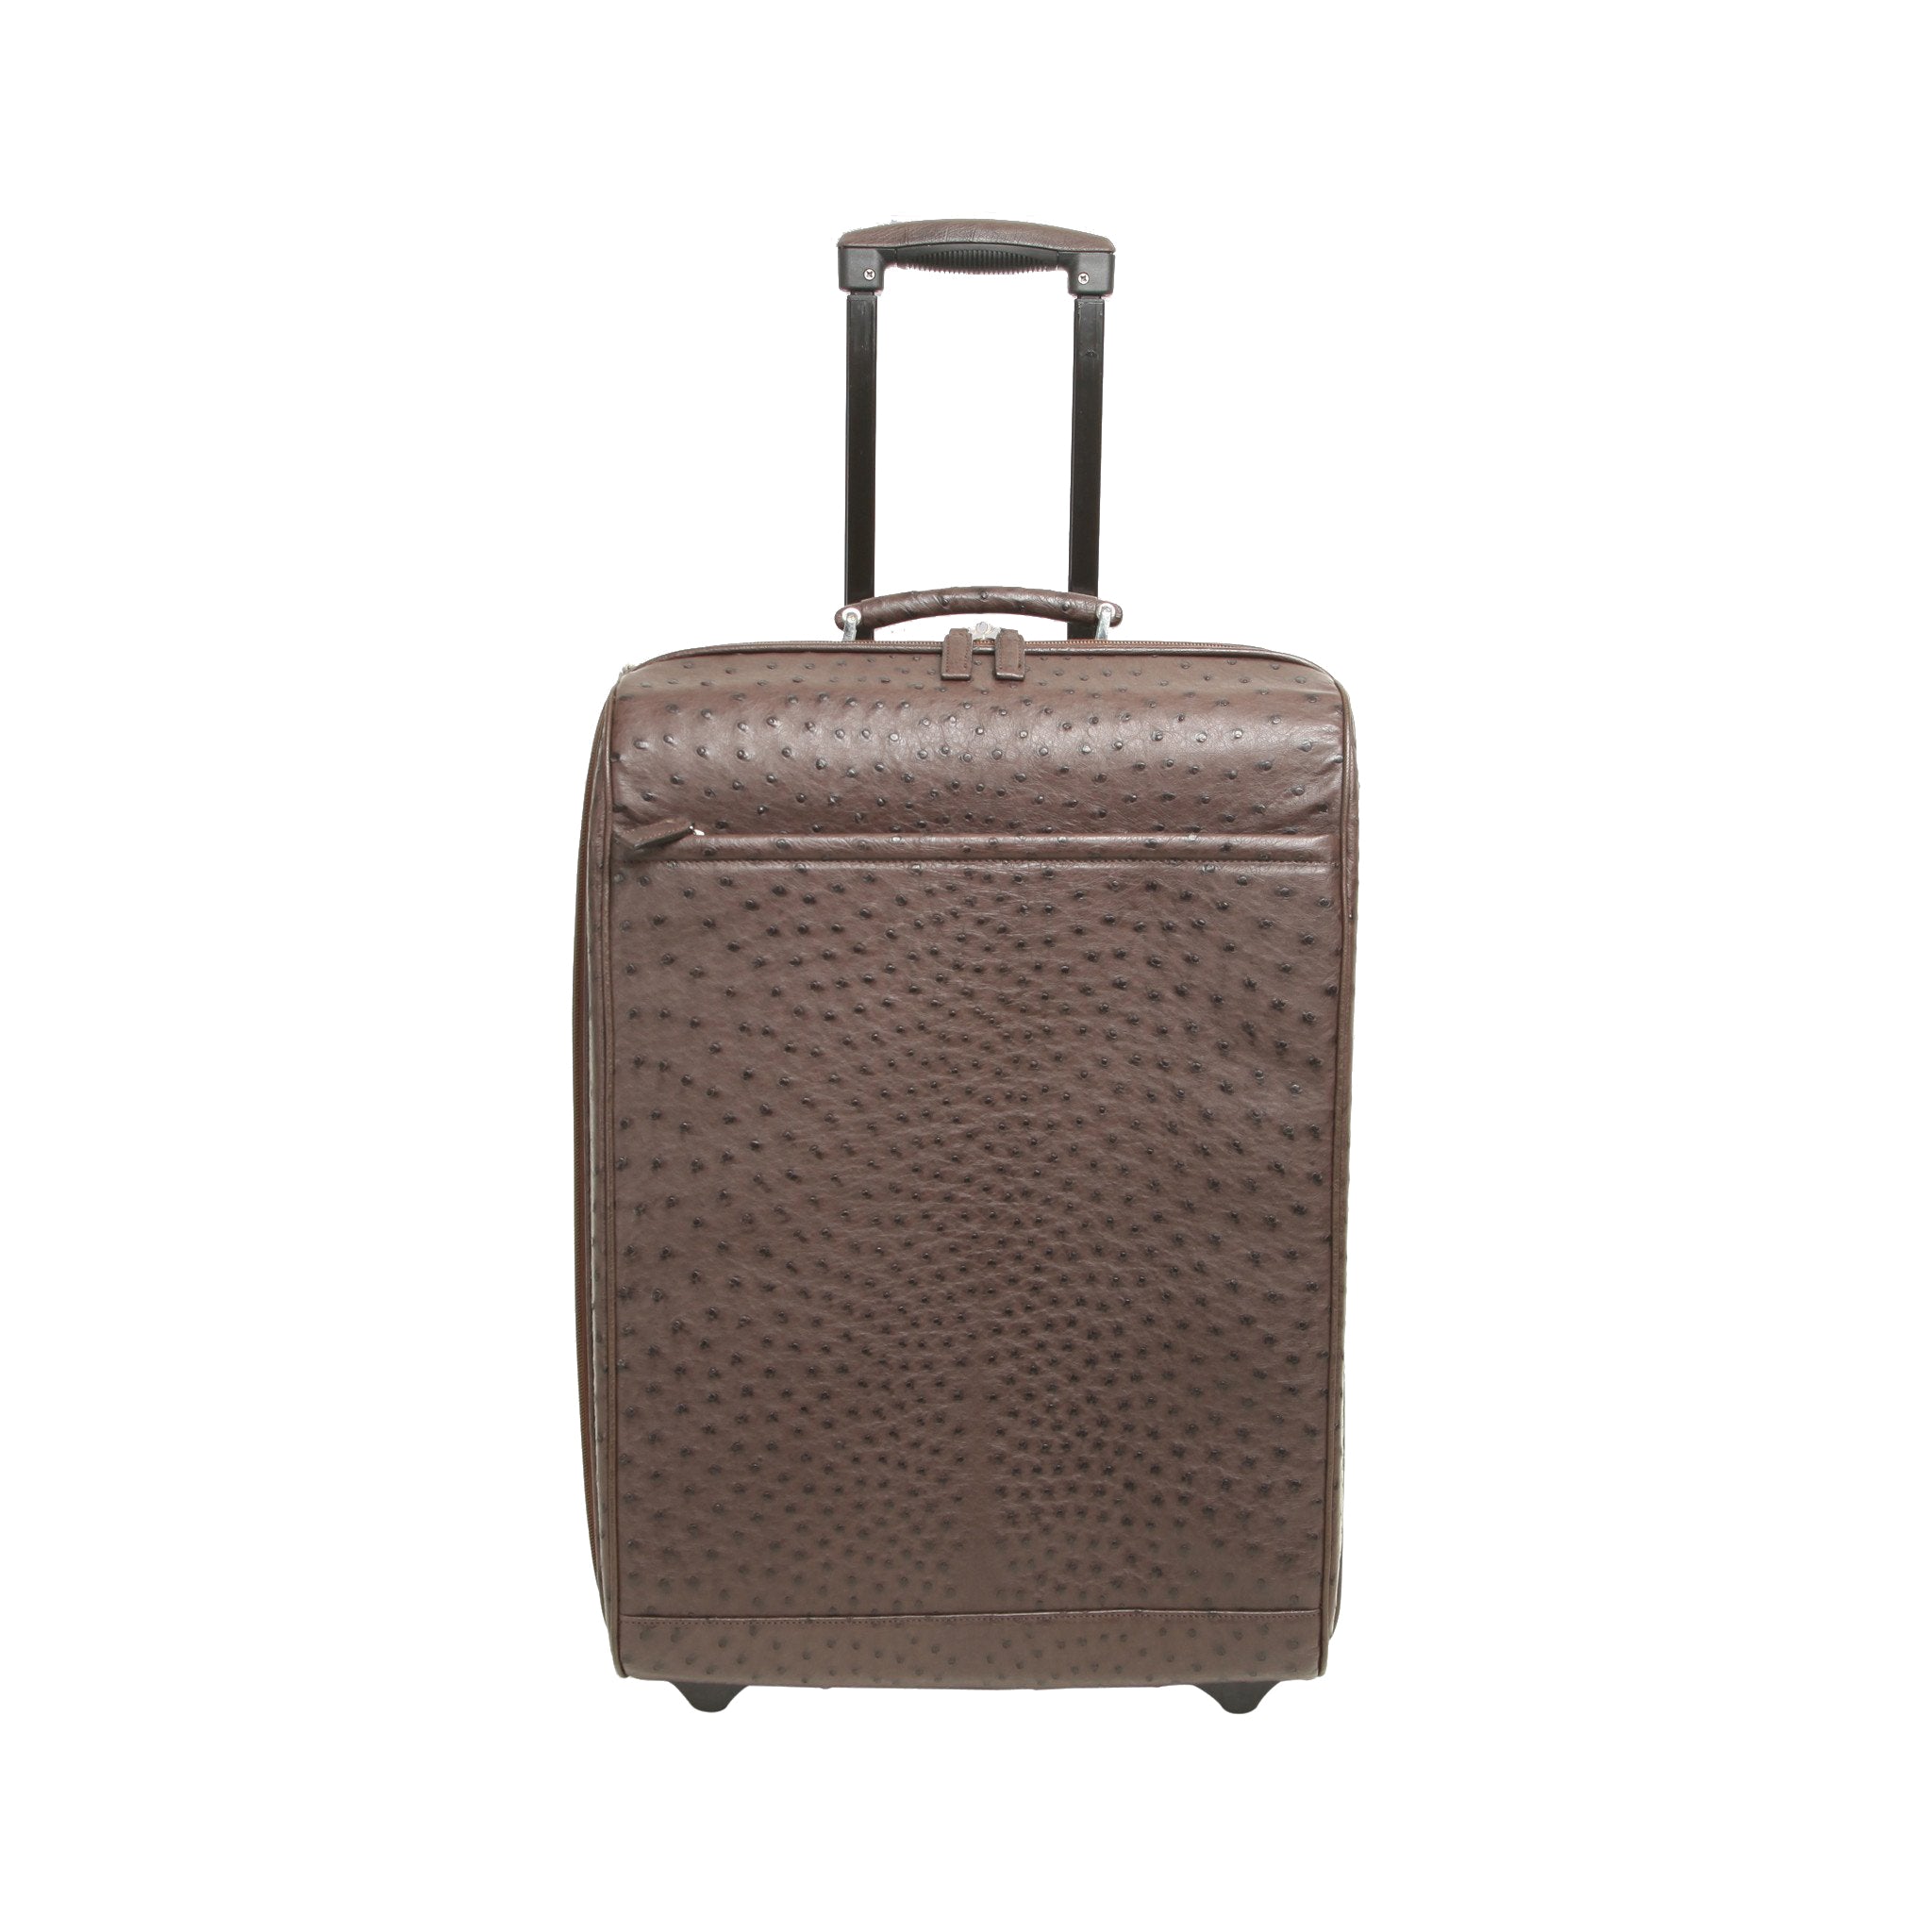 Bottega Veneta Travel Bag Luggage Suitcase Trolley Bag Suitcase New